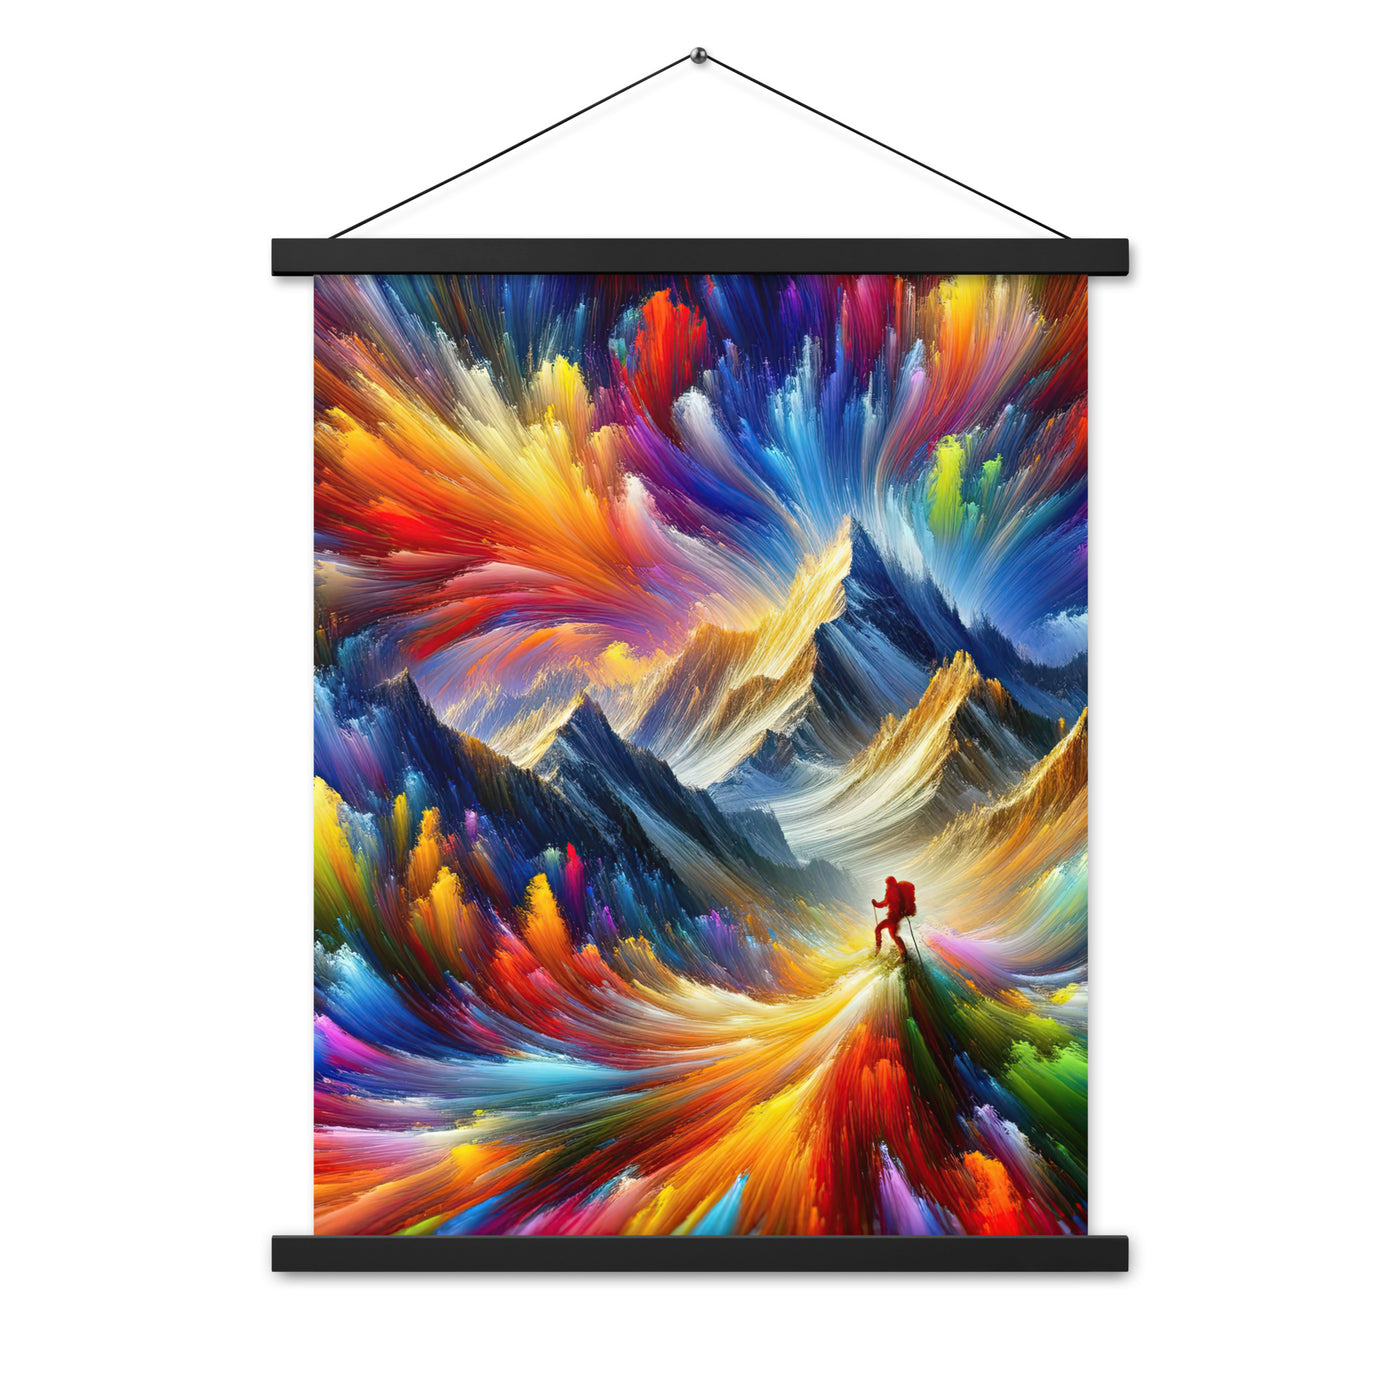 Alpen im Farbsturm mit erleuchtetem Wanderer - Abstrakt - Premium Poster mit Aufhängung wandern xxx yyy zzz 45.7 x 61 cm